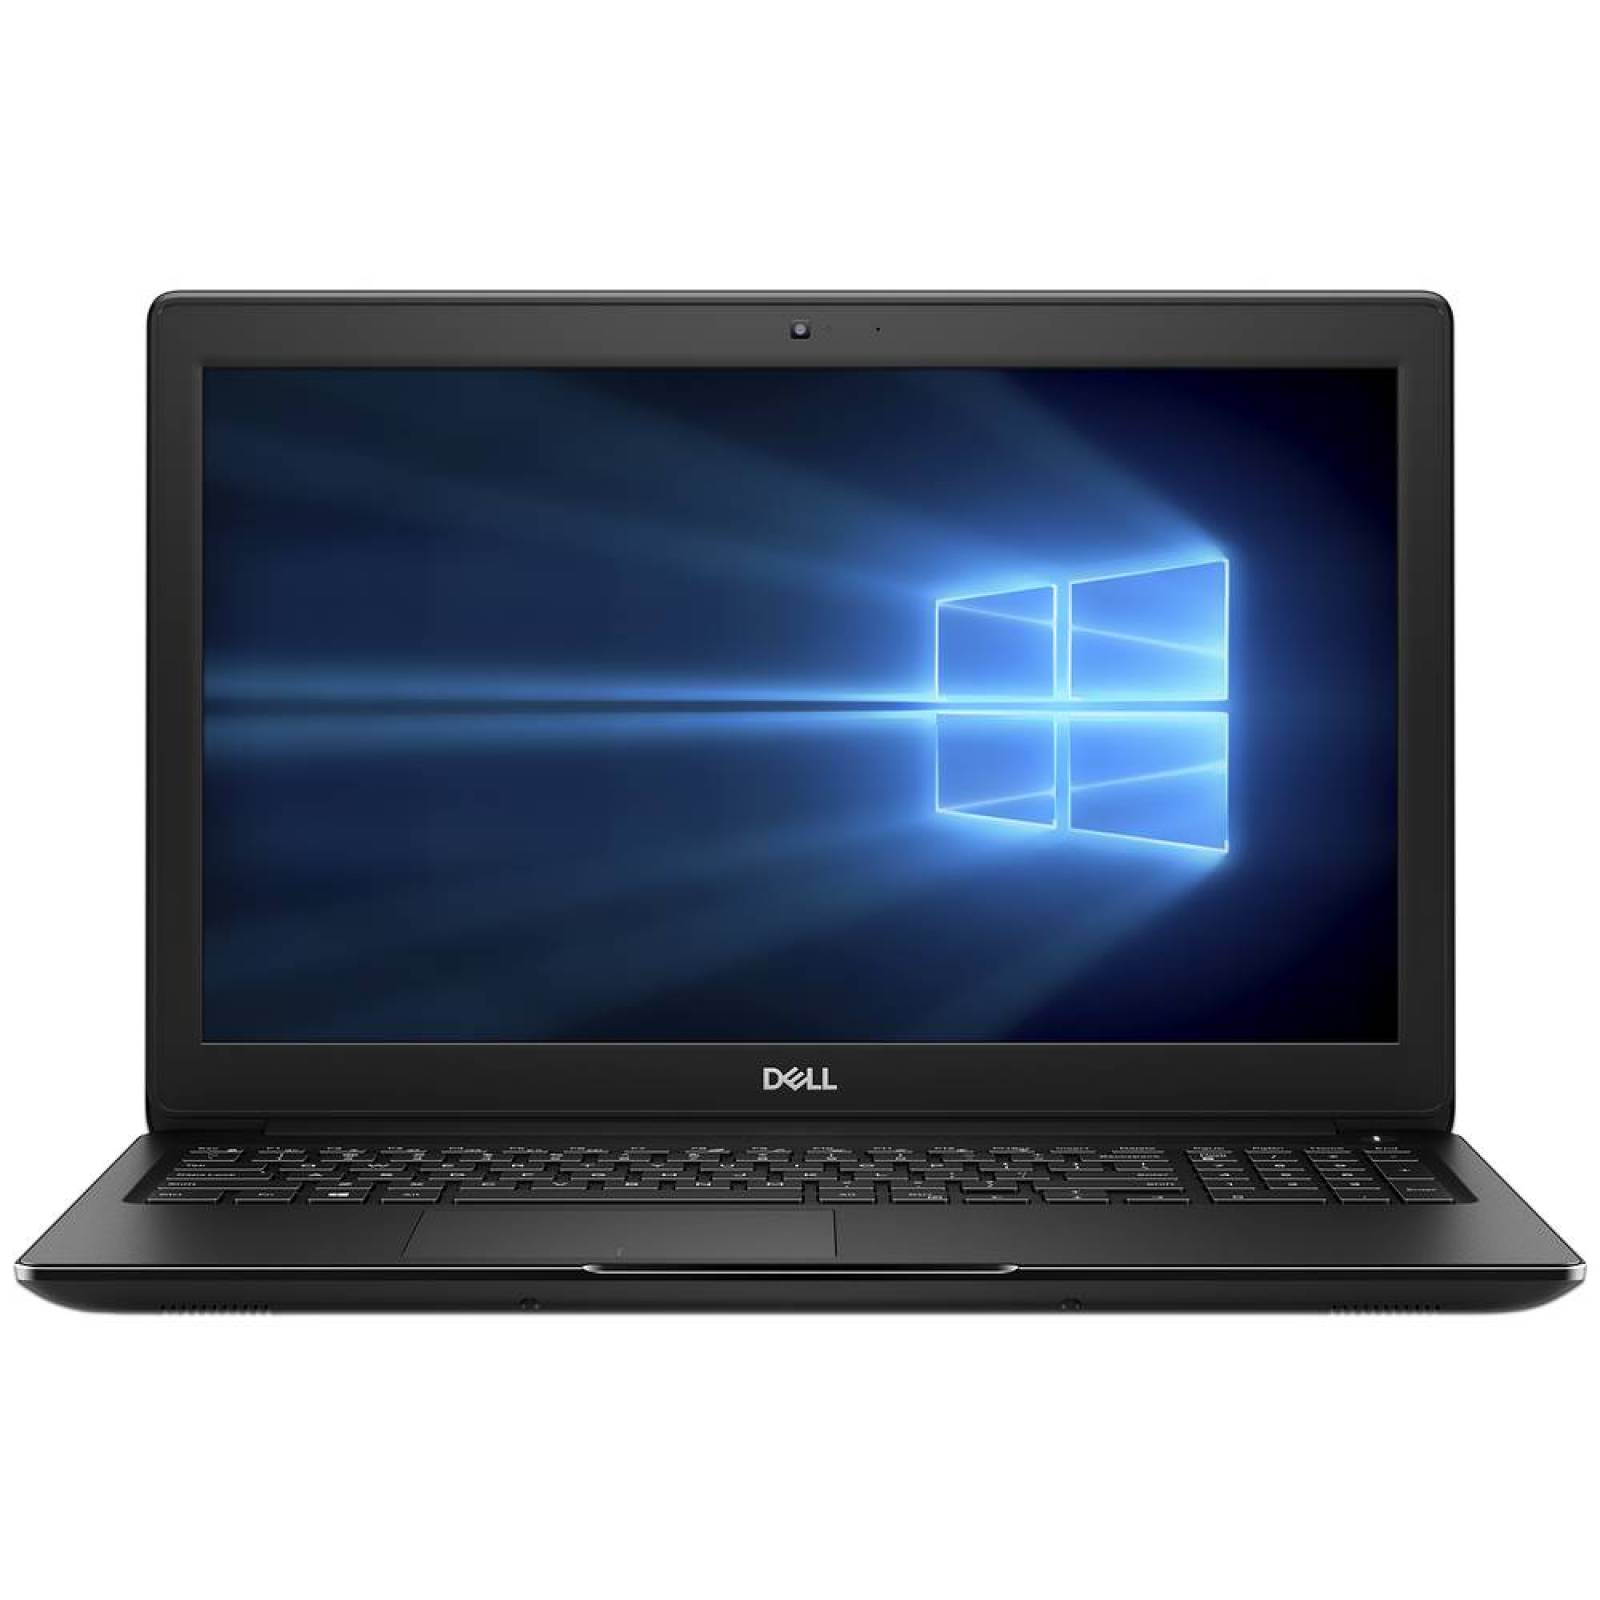 Laptop DELL Latitude 3500 Procesador Intel Core i5 Memoria 8GB Disco Duro de 1TB Pantalla 15.6" Windows 10 Pro